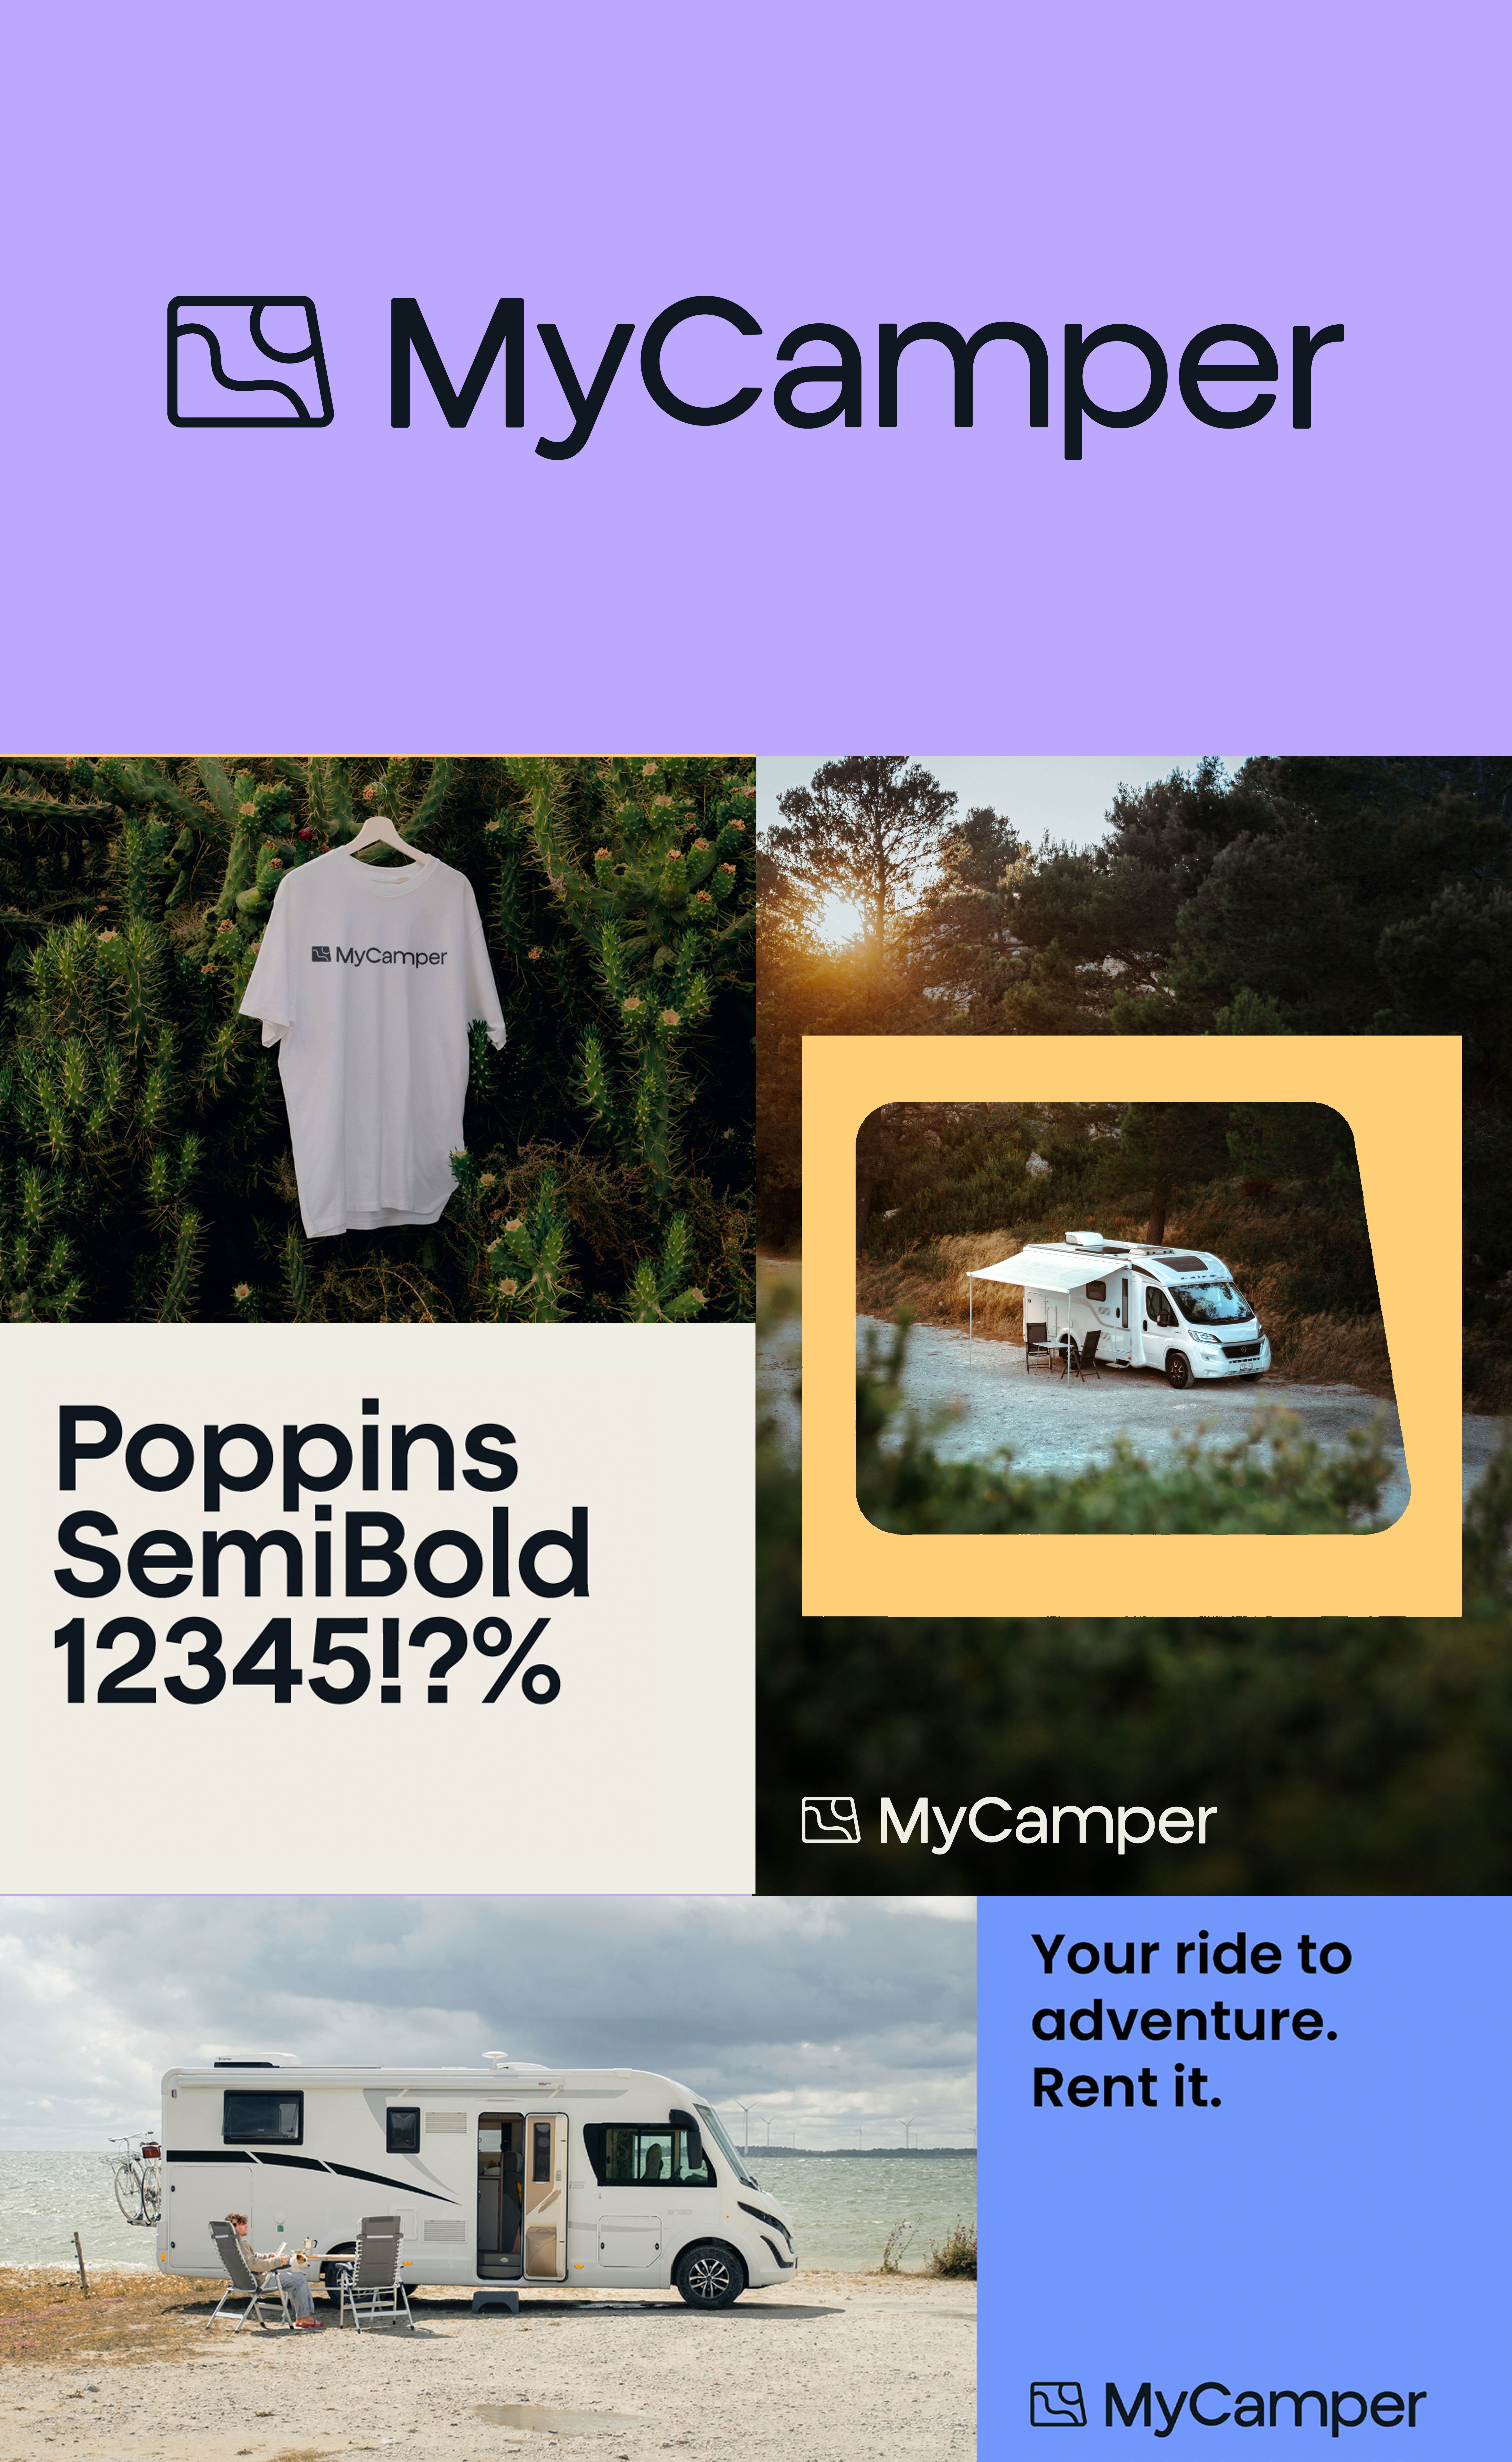 MyCamper nye merkevareidentitet er folkelig, varm og pålitelig.